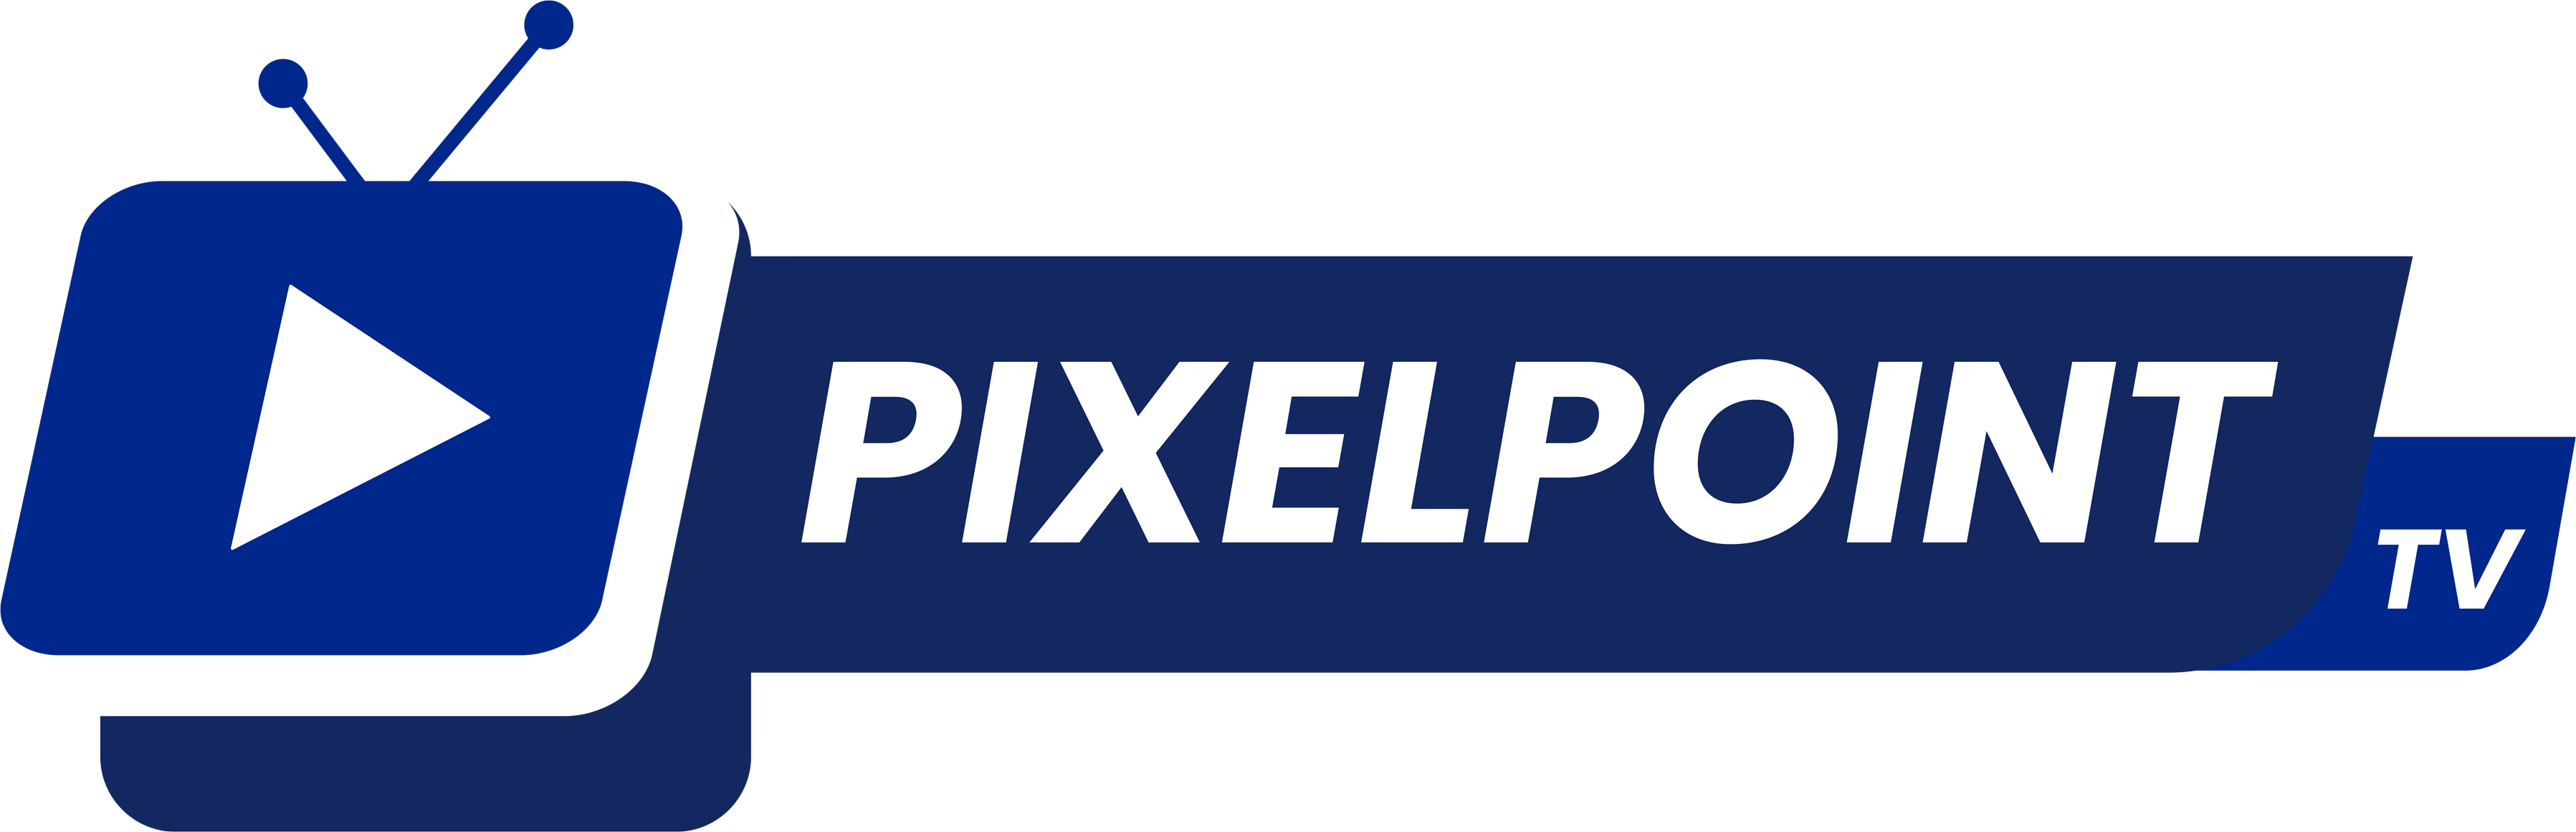 PixelPointTV